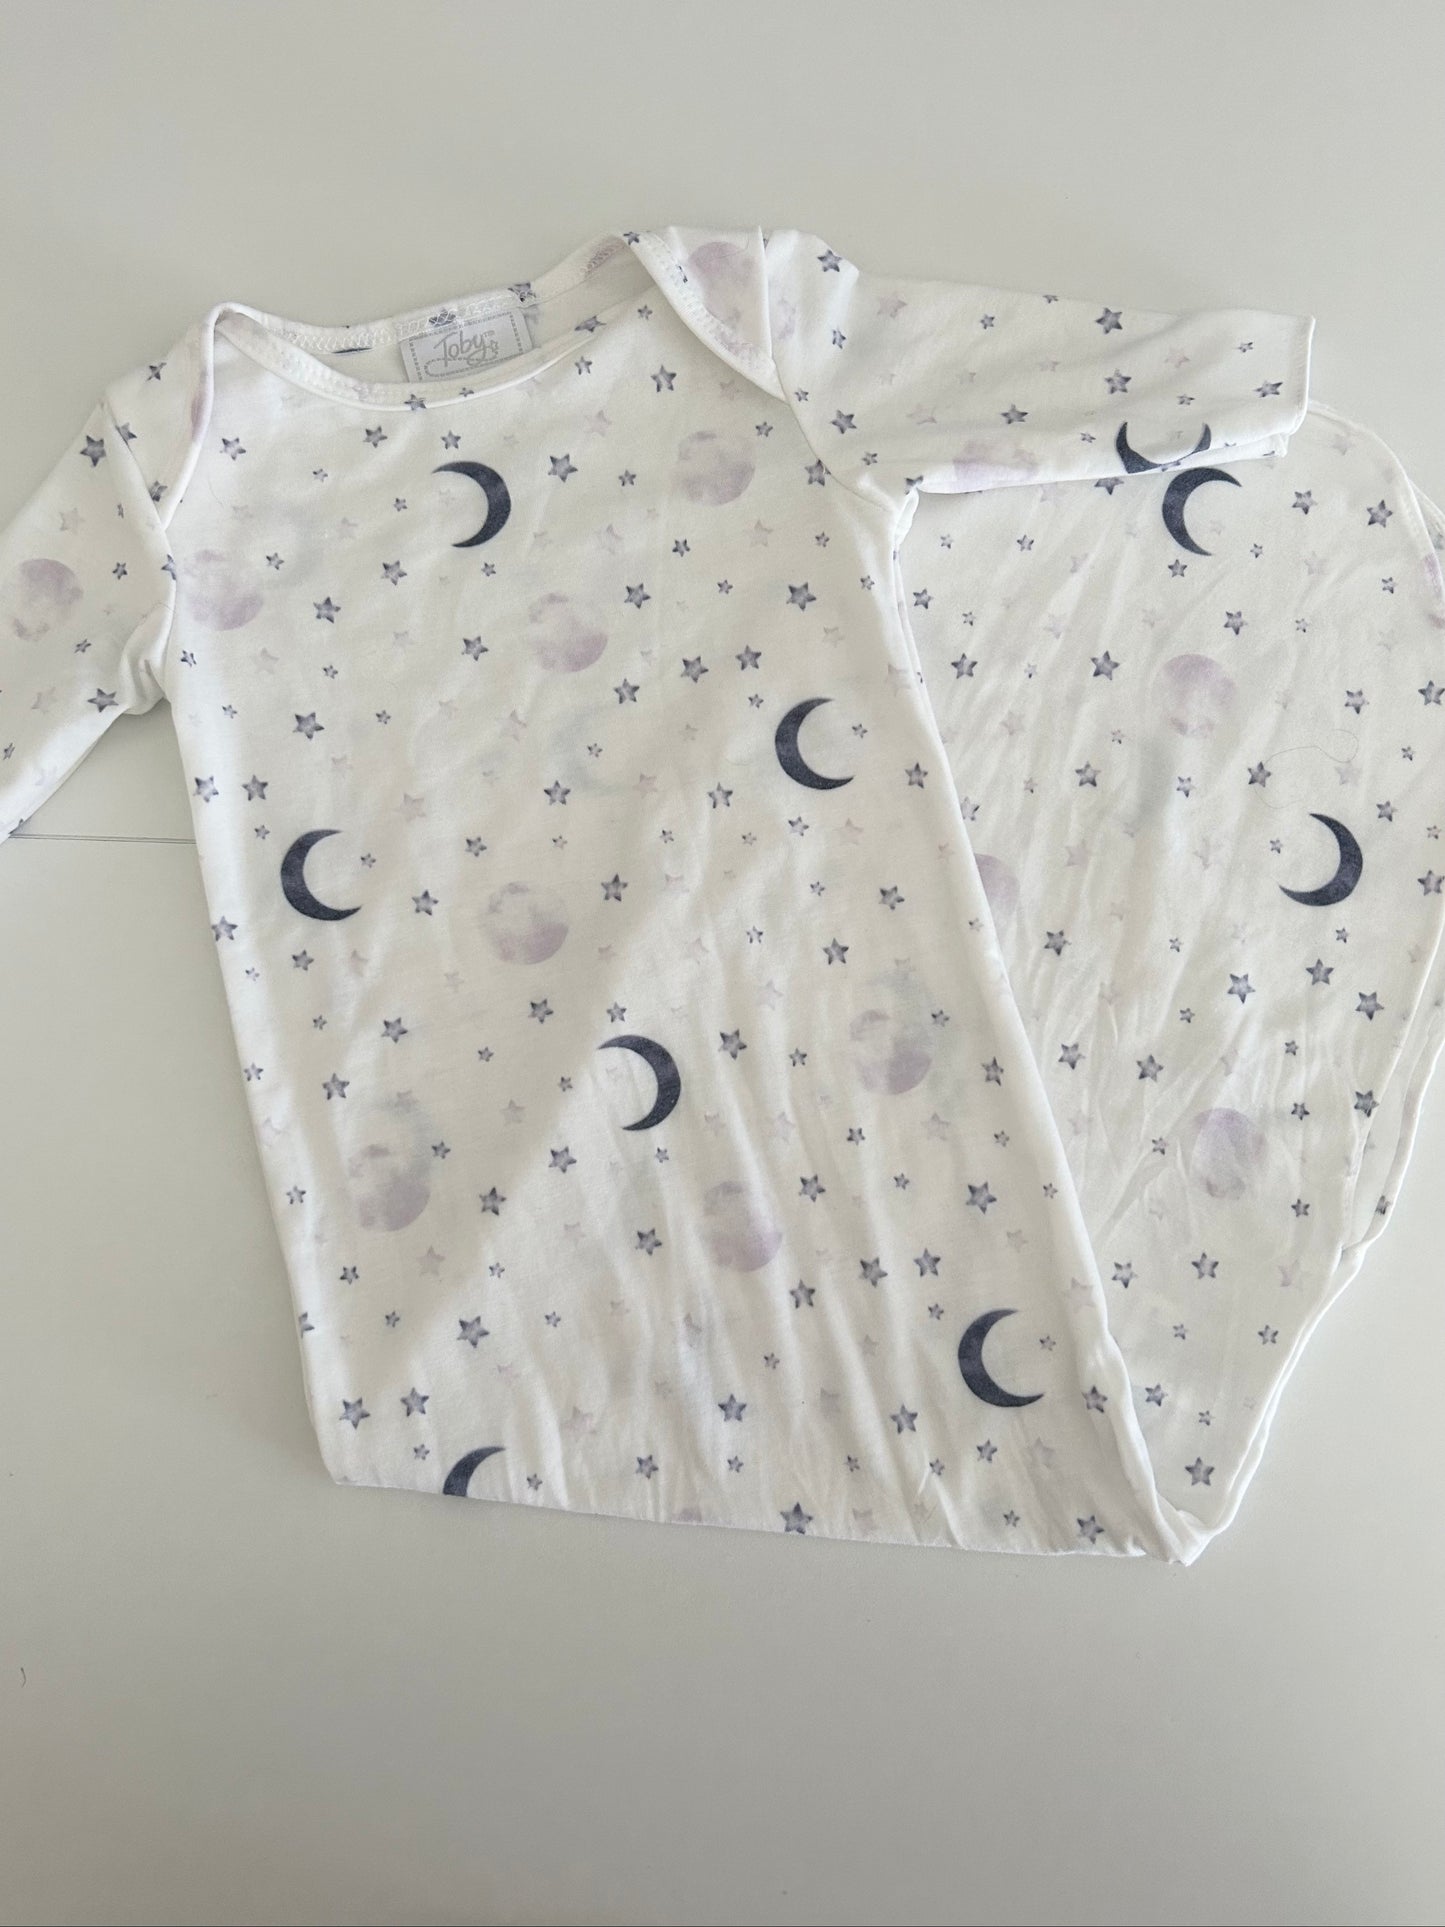 Toby's | Sleeper Tie Gown | Girls | White & Purple/Blue | Newborn